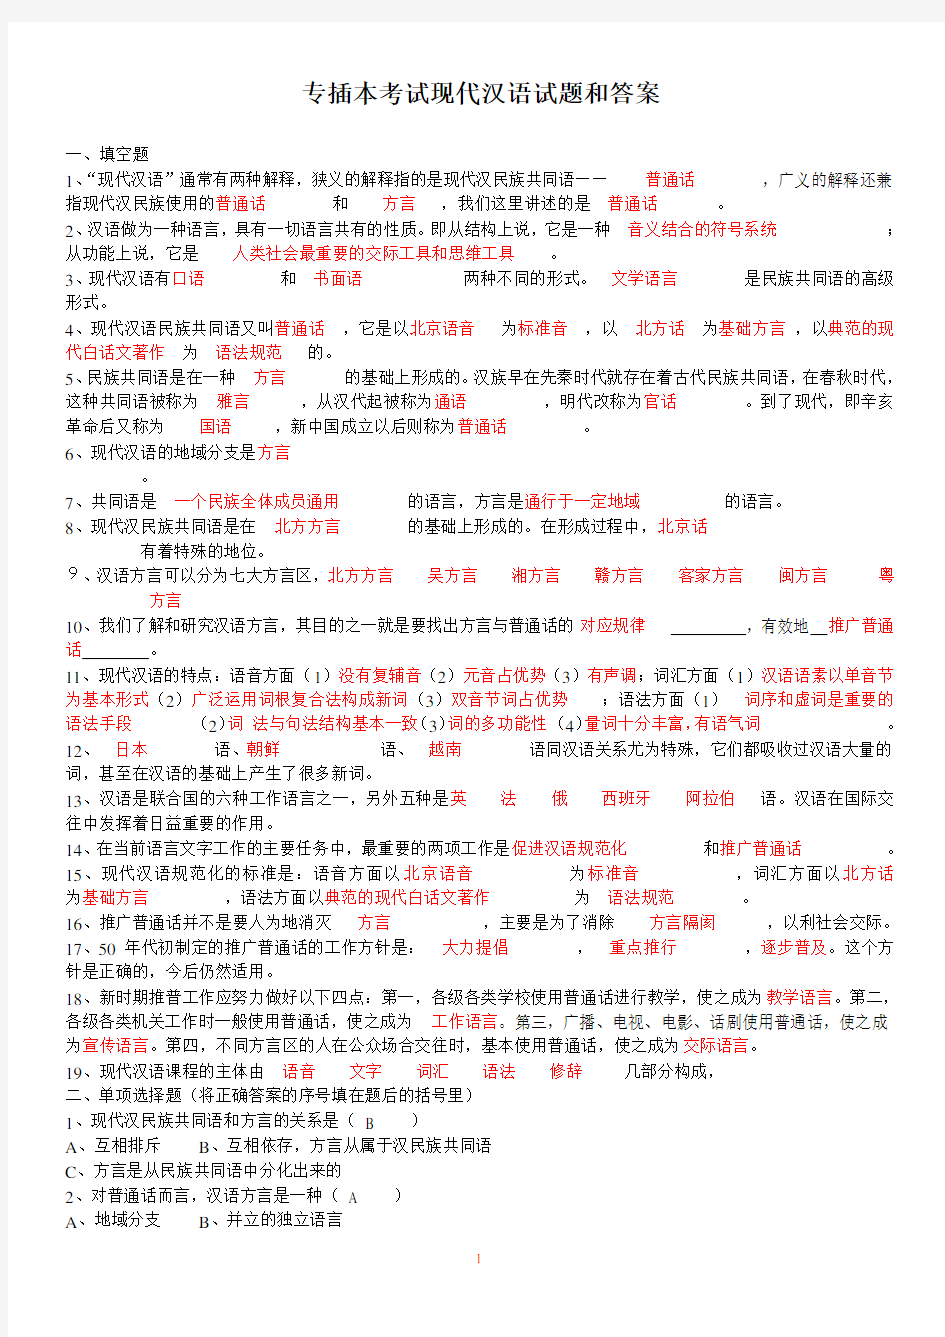 专插本考试《现代汉语》试卷和答案